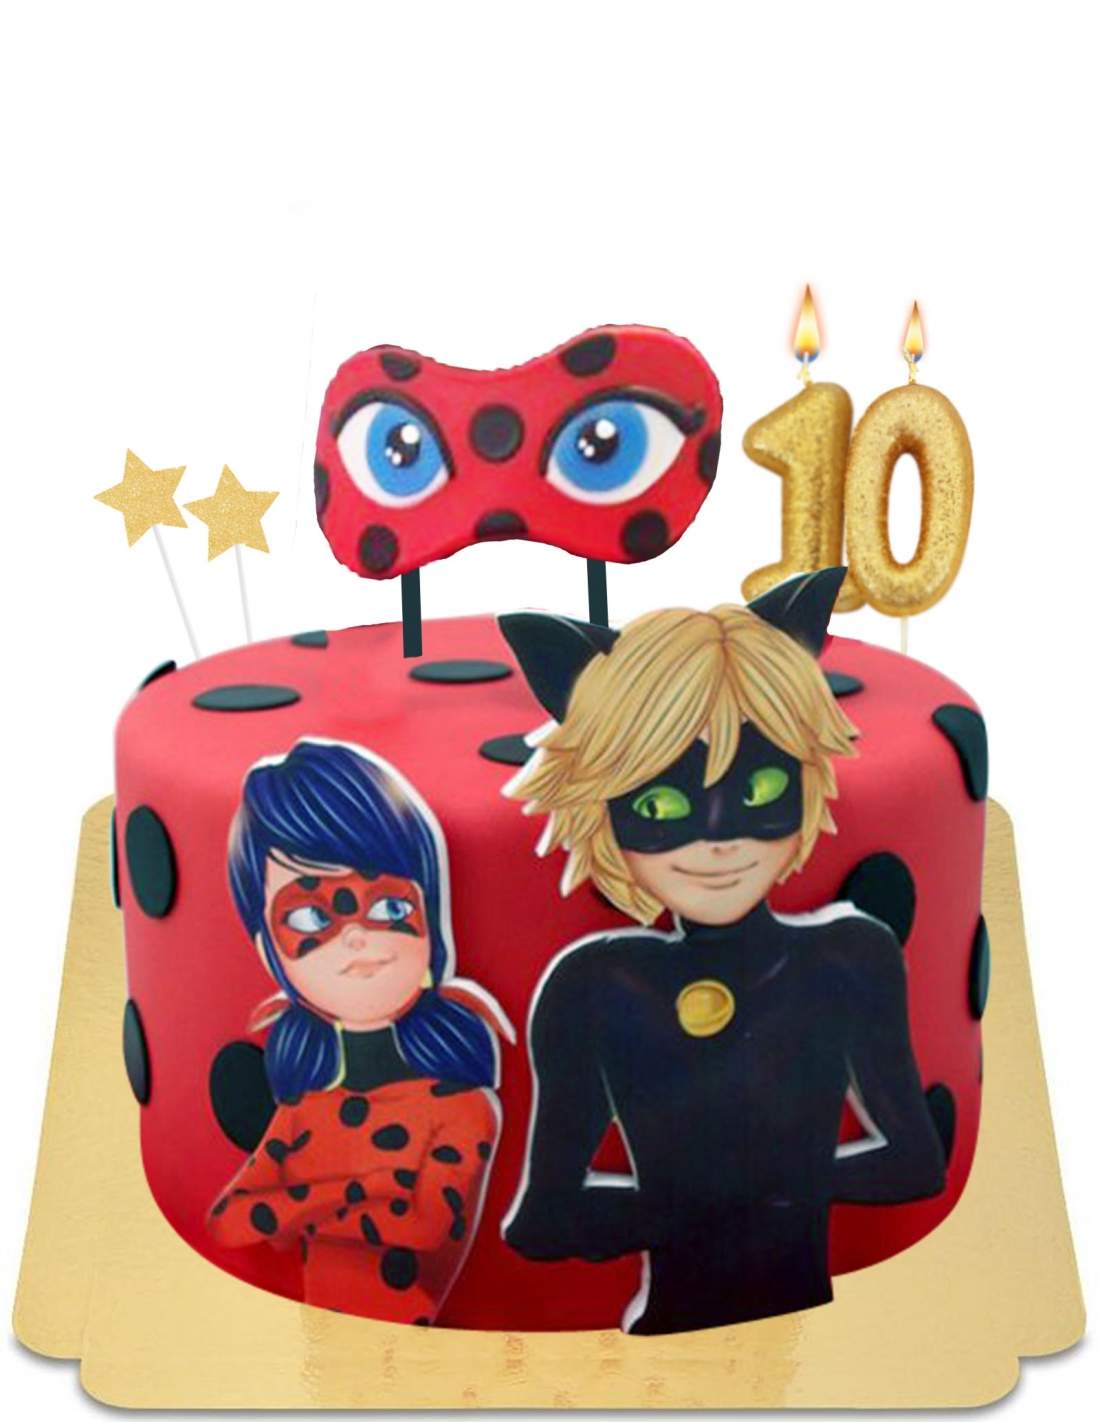 Gâteau d'anniversaire Miraculous en pâte à sucre, gâteau d'anniversaire  Ladybug - Super Gâteaux